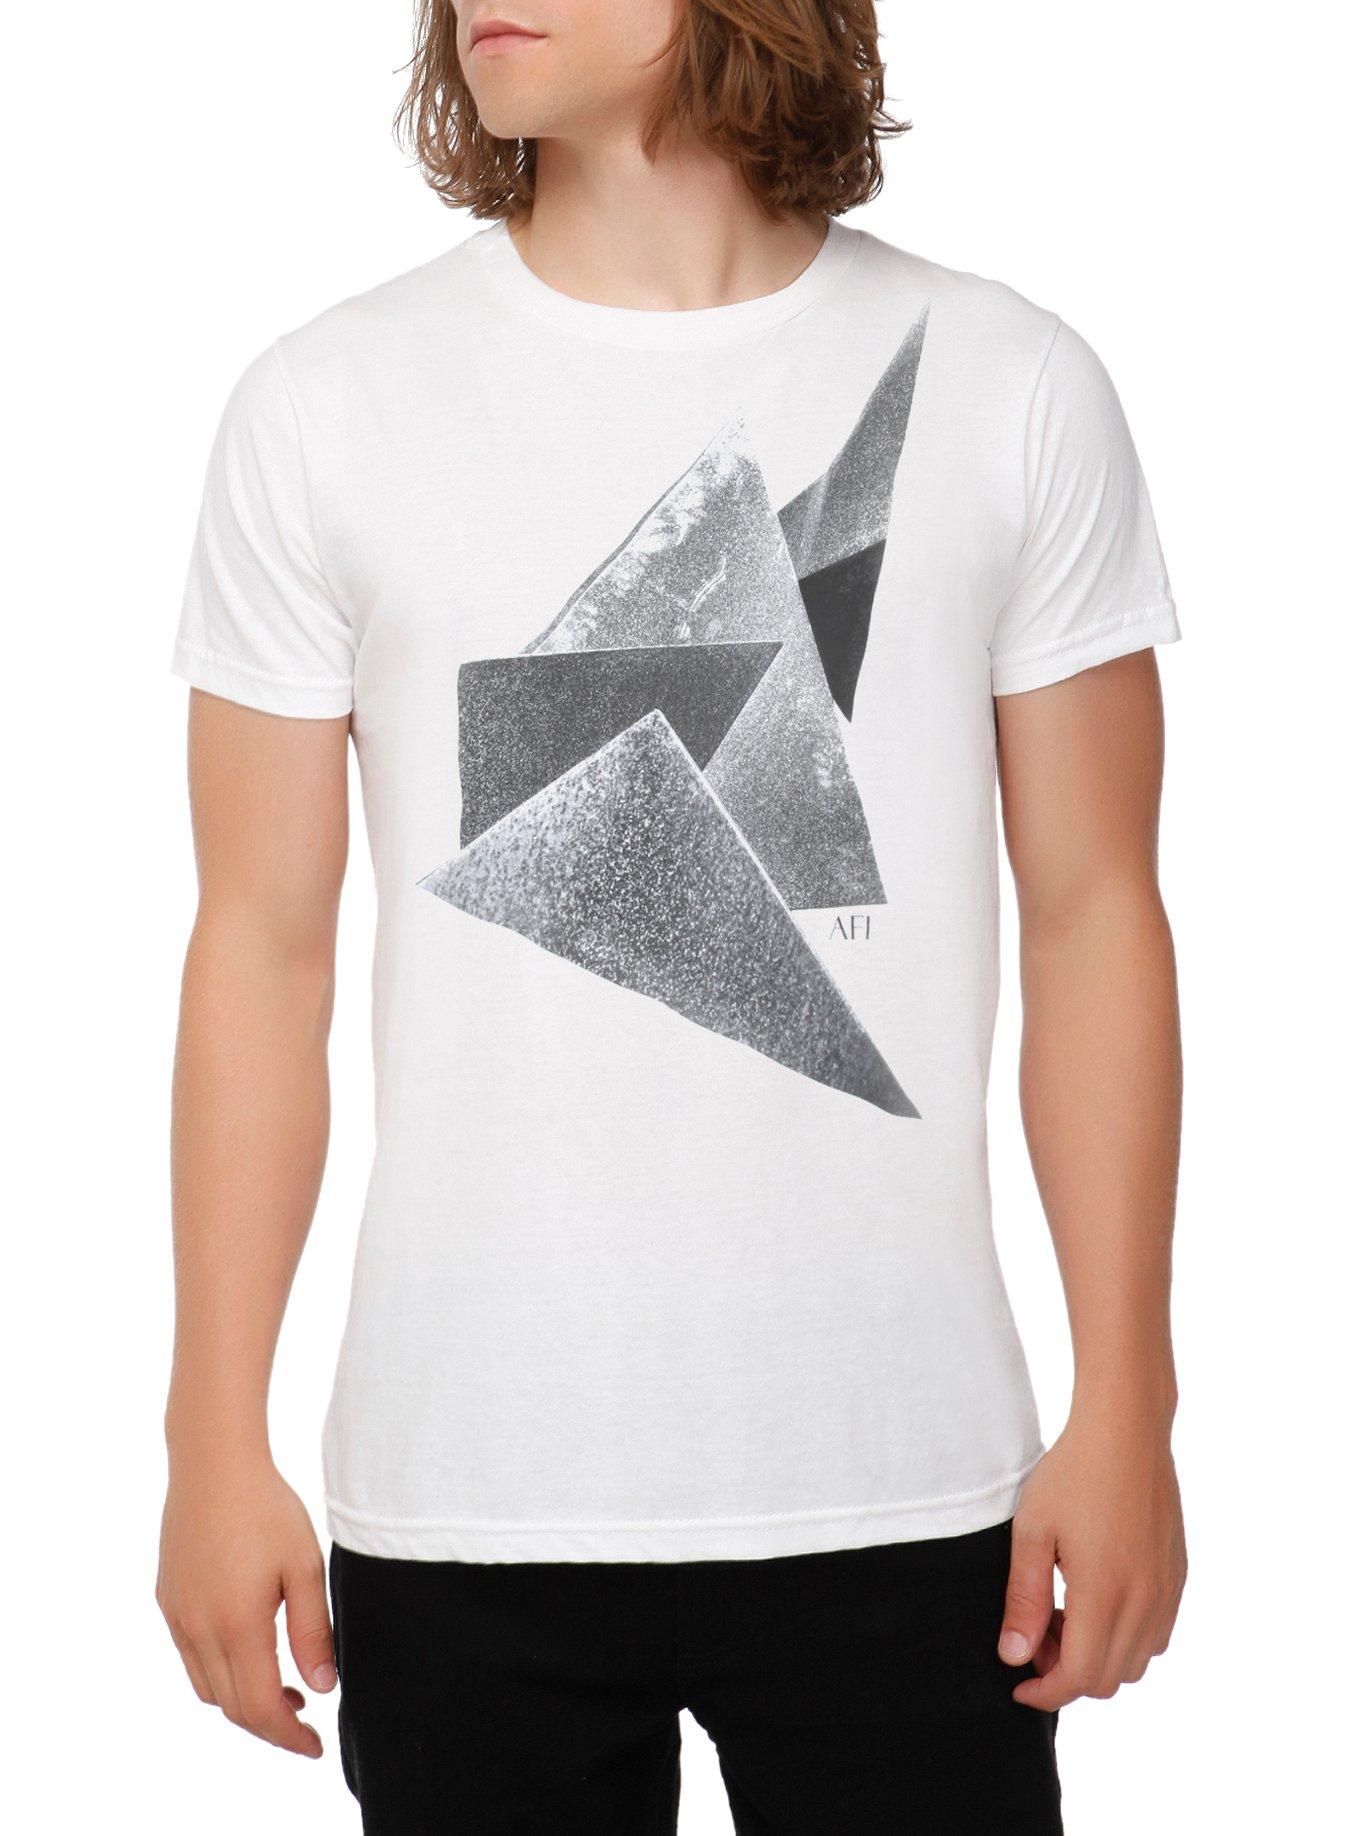 AFI Triangles T-Shirt, WHITE, hi-res